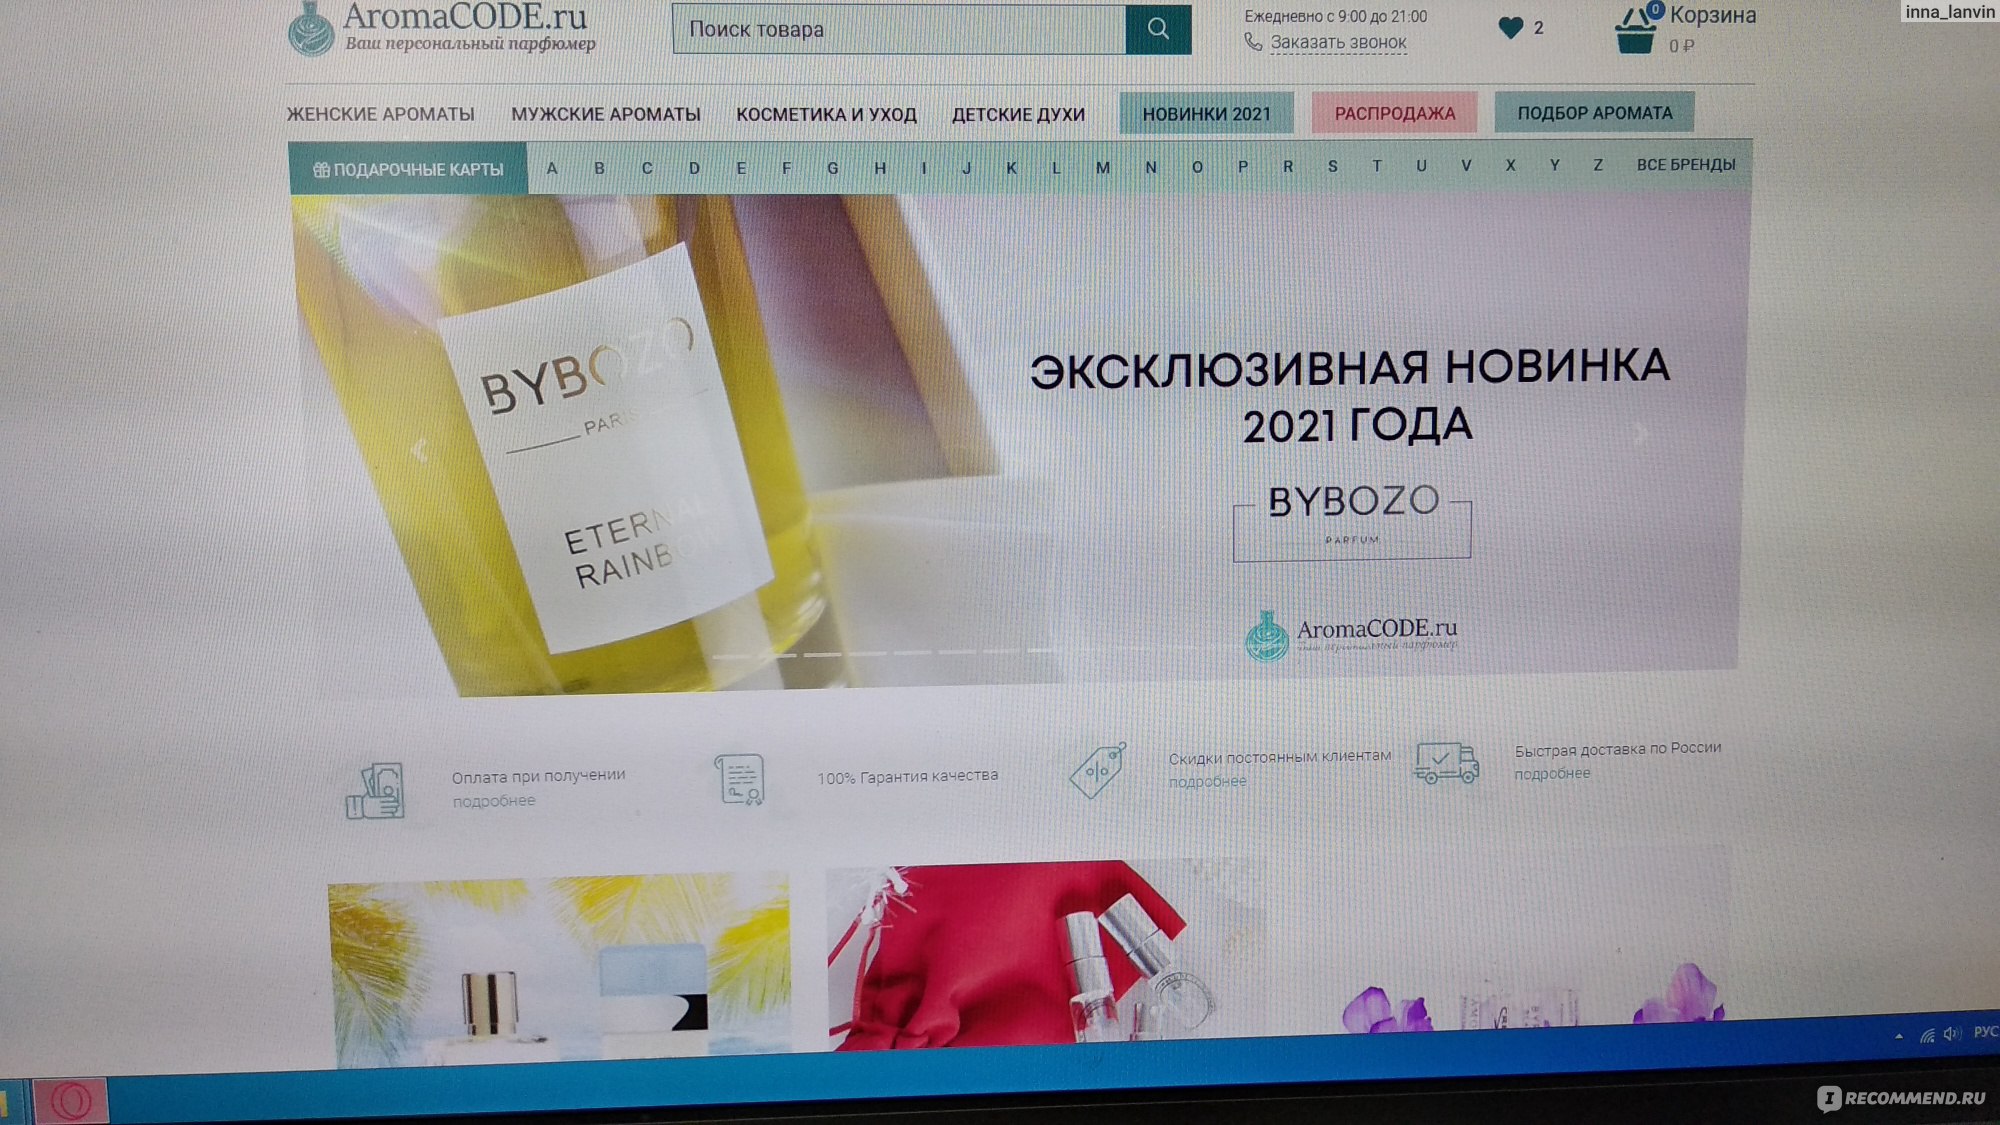 Aromacode Ru Интернет Магазин Парфюмерии Отзывы